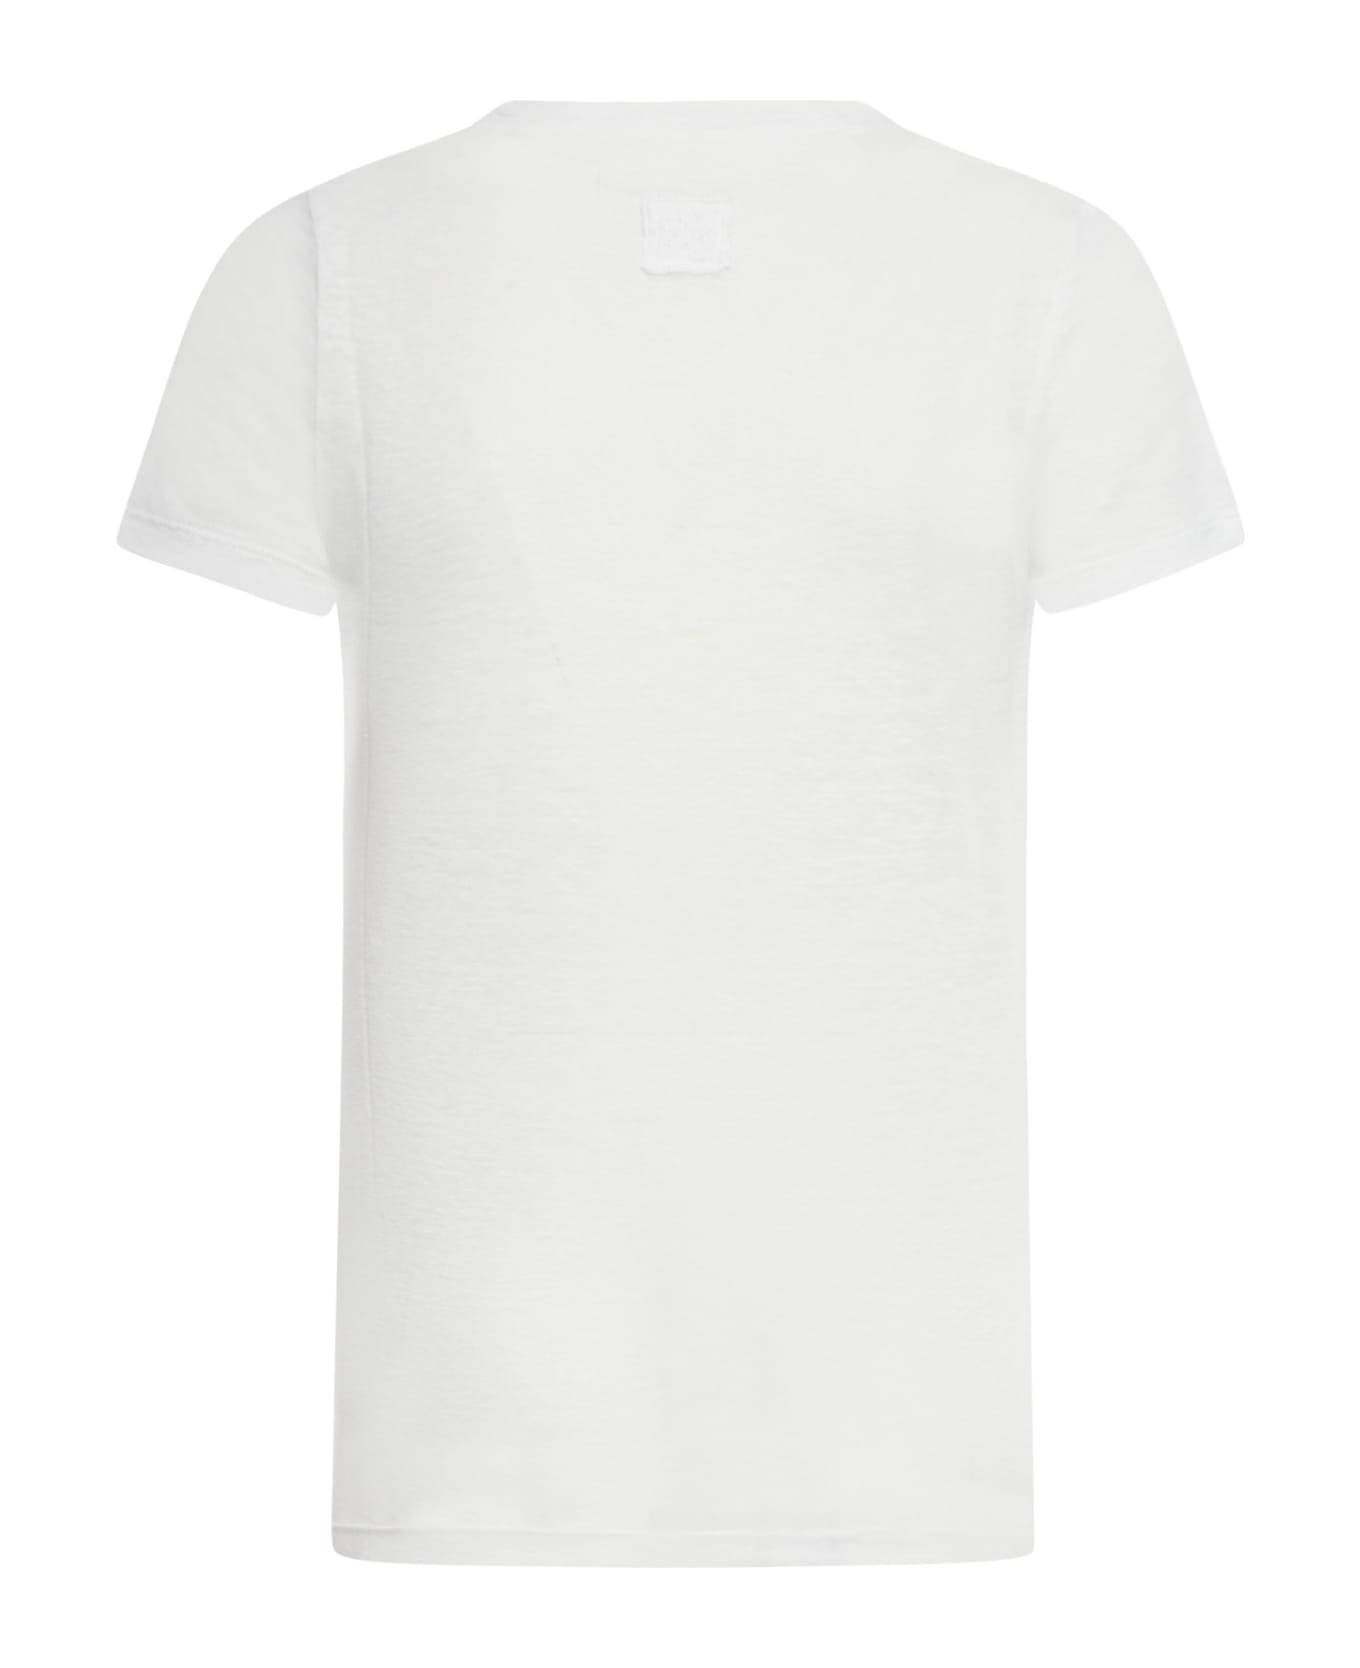 120% Lino Short Sleeve Women Tshirt - R White Solid